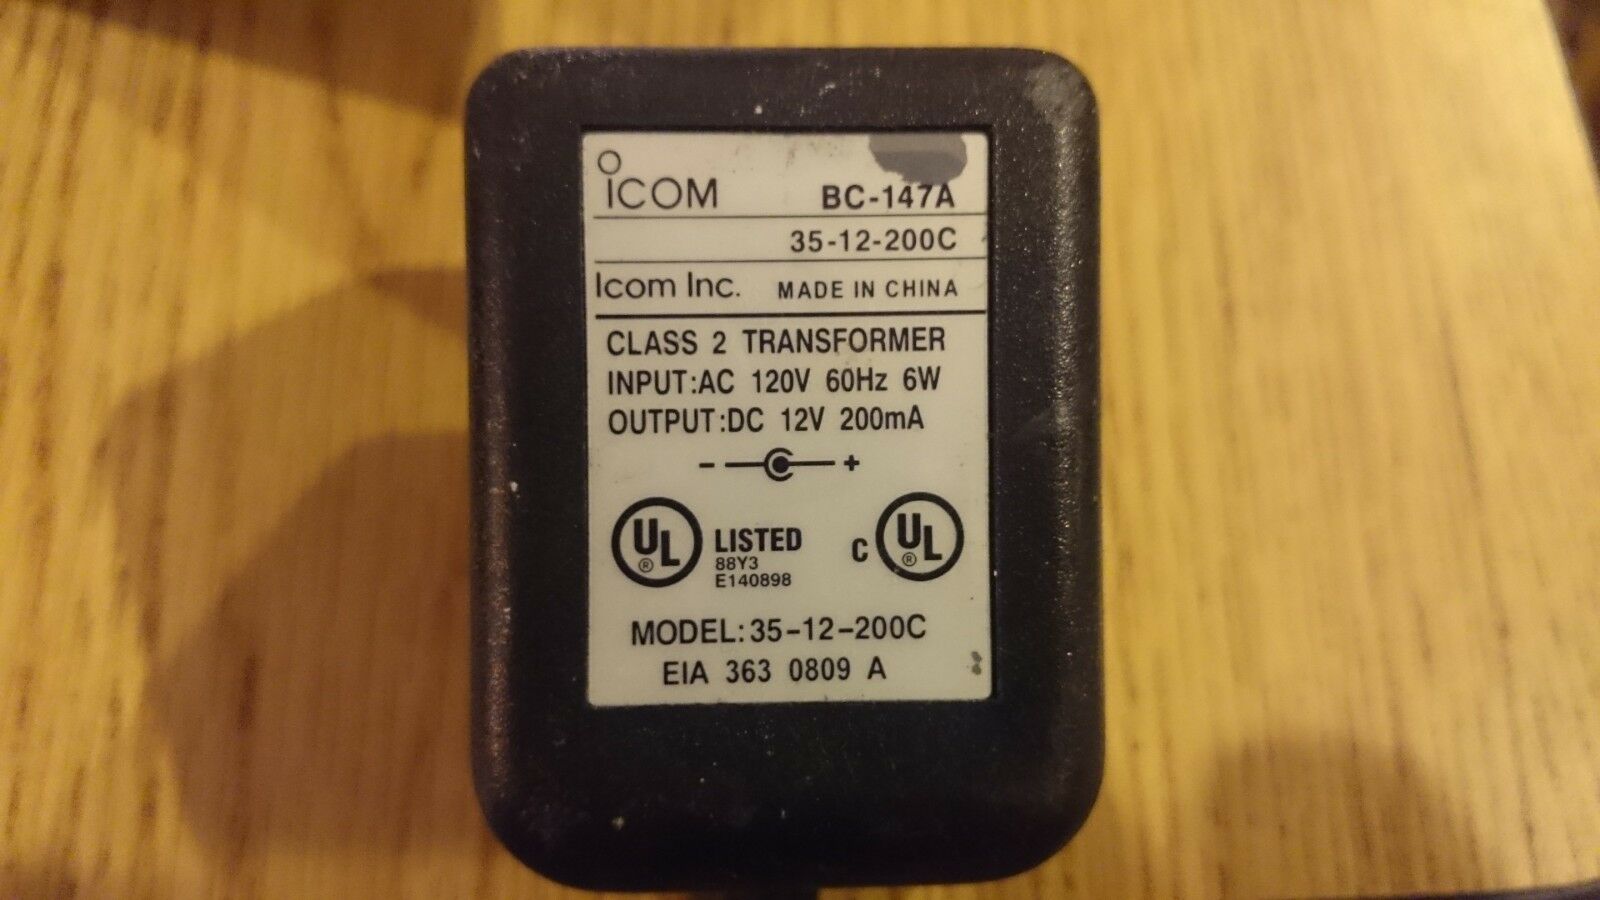 Original 12V 200mA ICOM BC-147A 35-12-200C AC Power Supply Charger Adapter - Click Image to Close